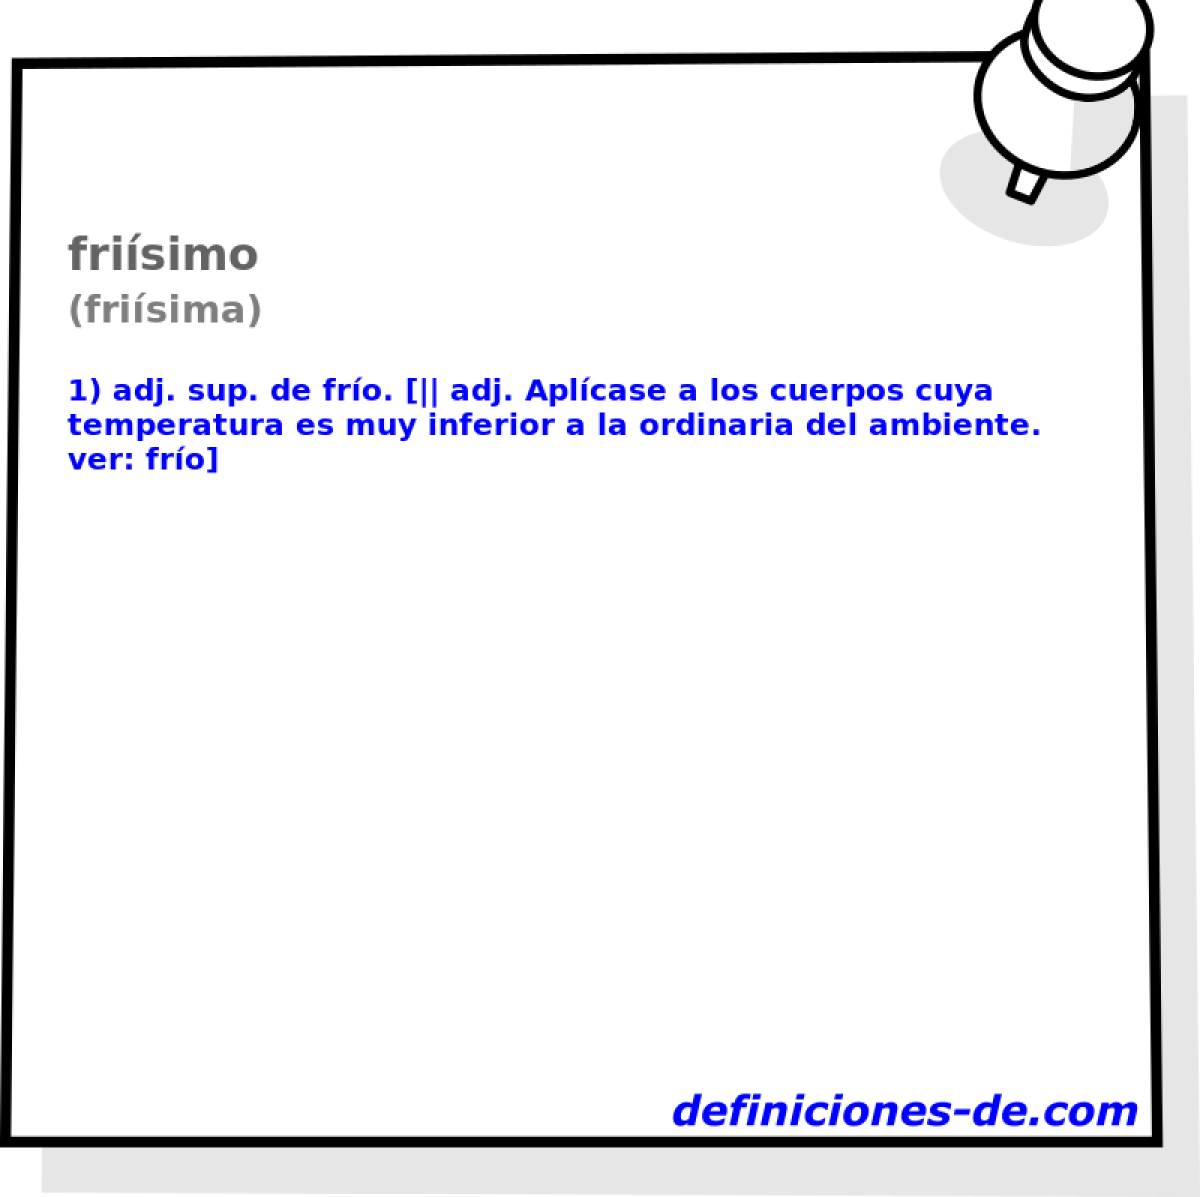 frisimo (frisima)